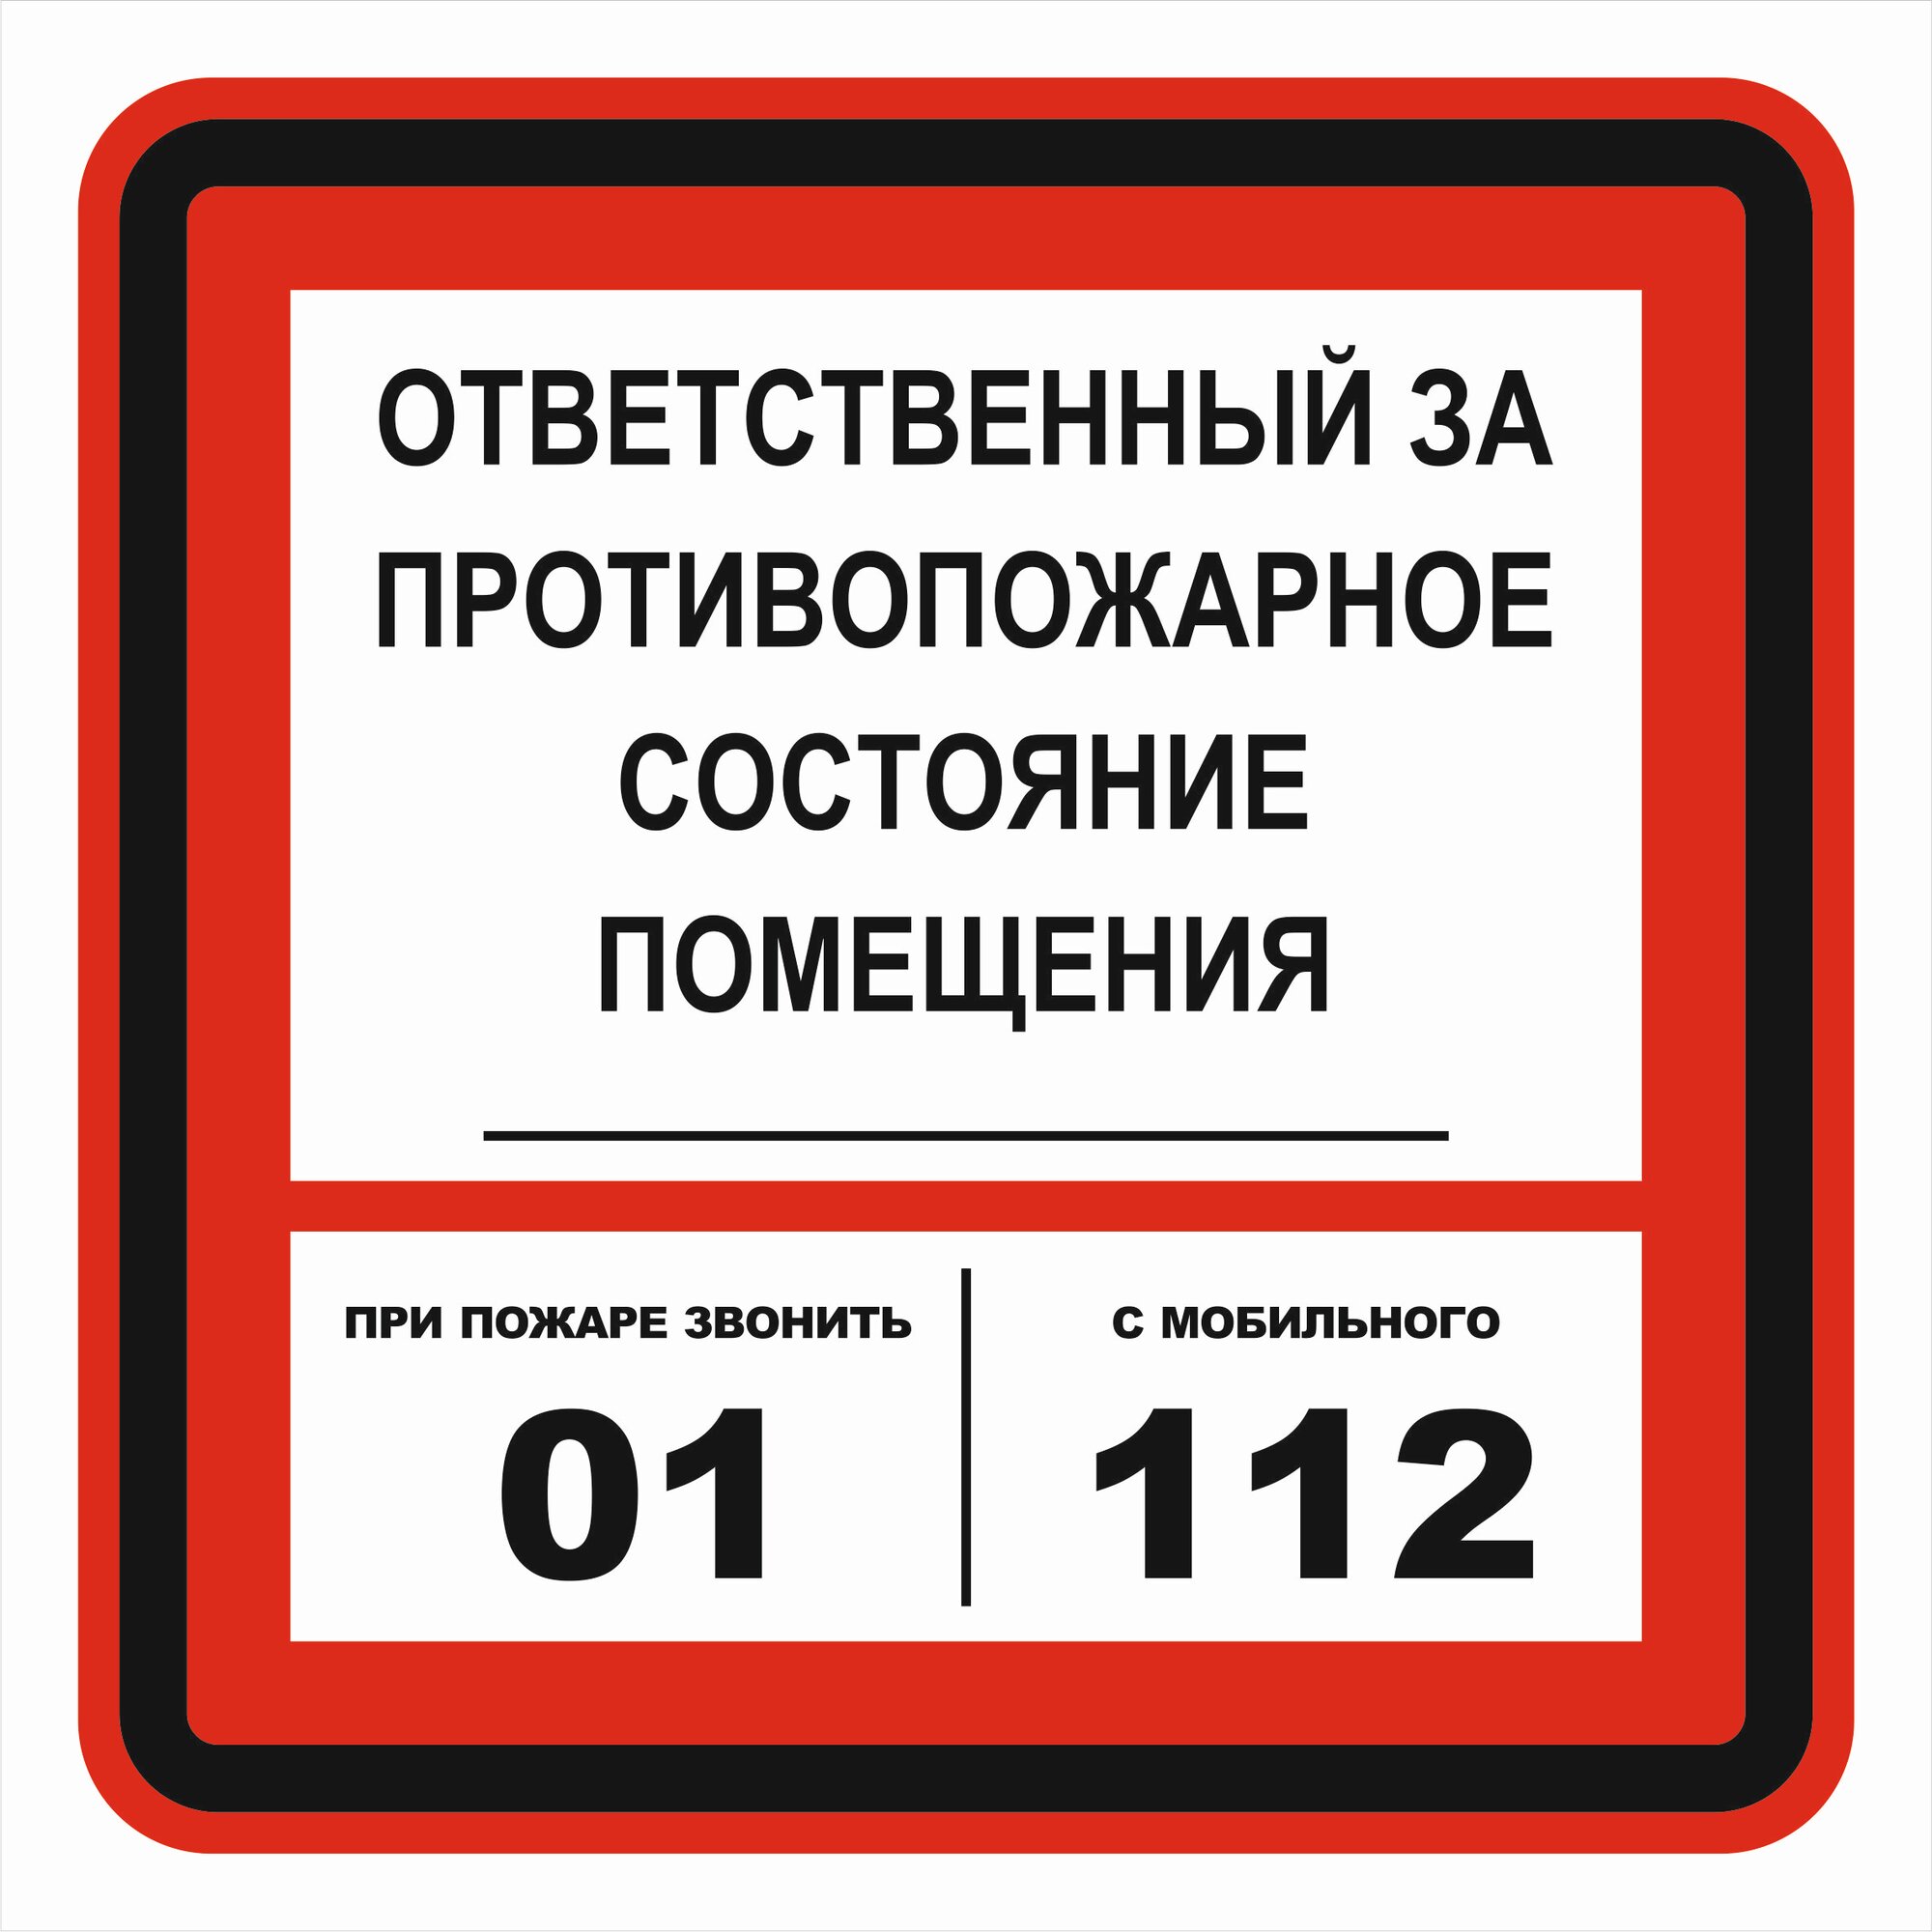 Знак пожарной безопасности Т303-03 "Ответственный за противопожарное состояние" 200х200 пленка, уп. 3 шт.